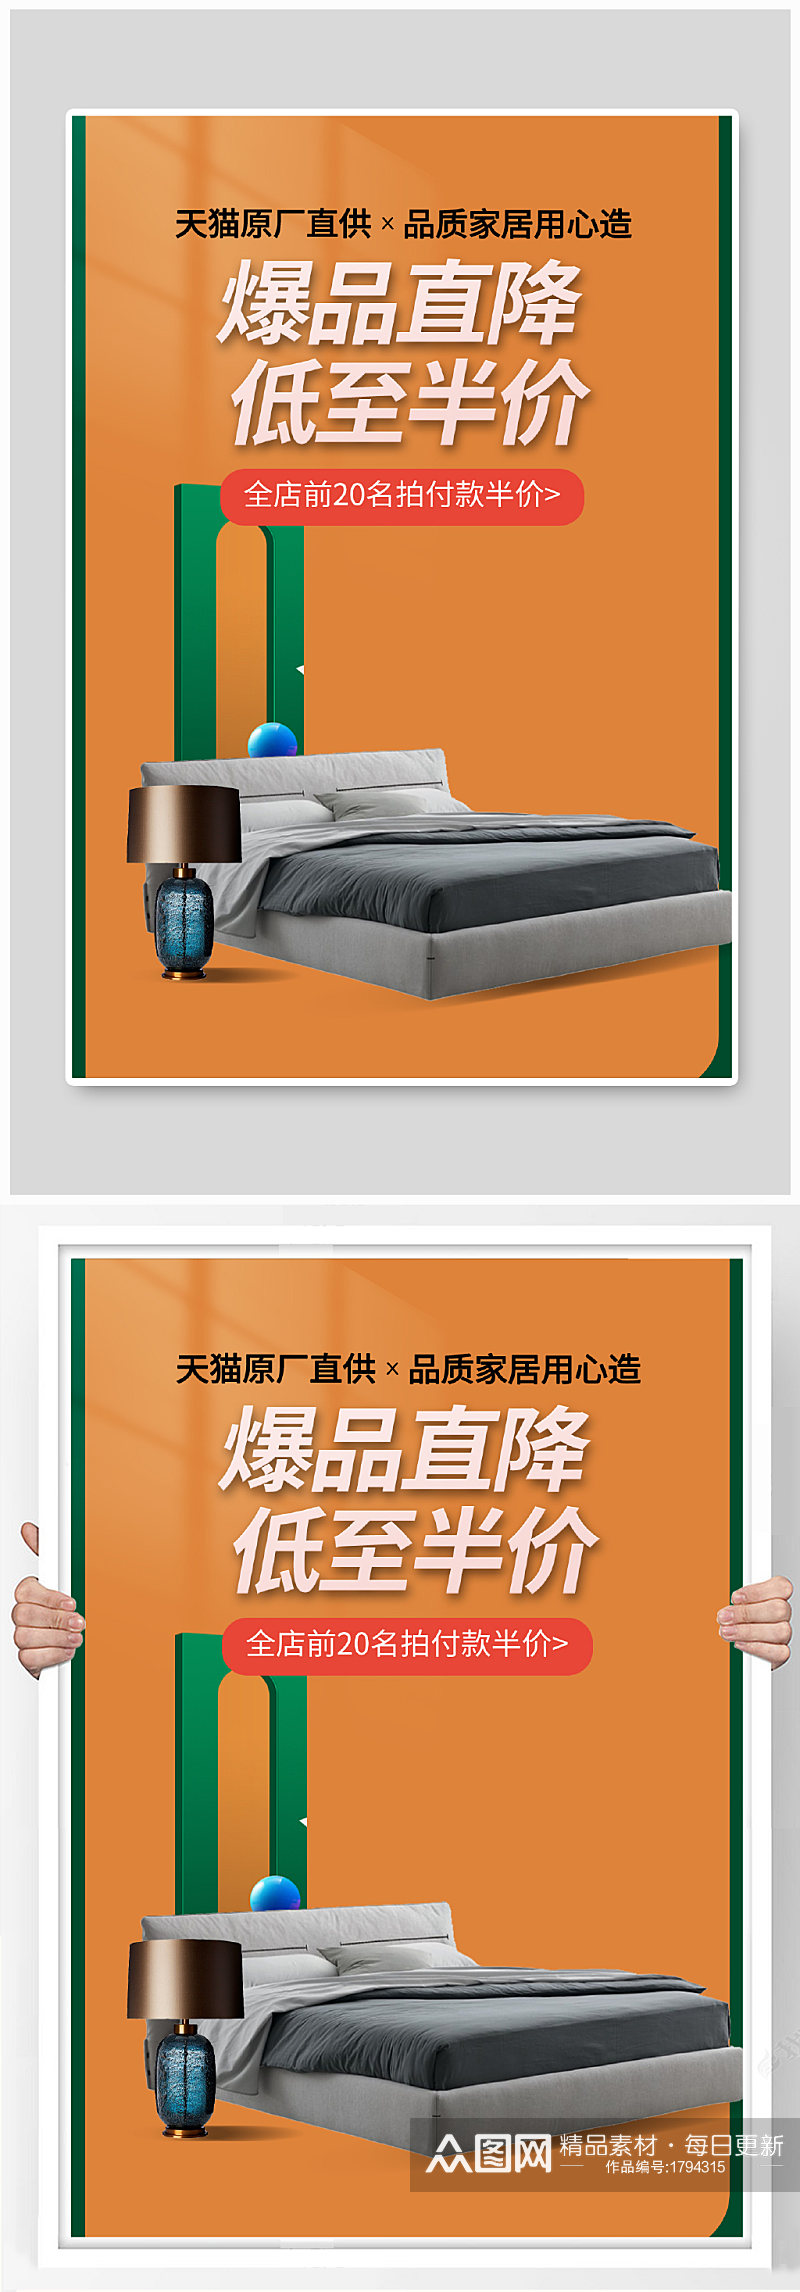 家装节大促床垫床家居装修建材促销海报模板素材